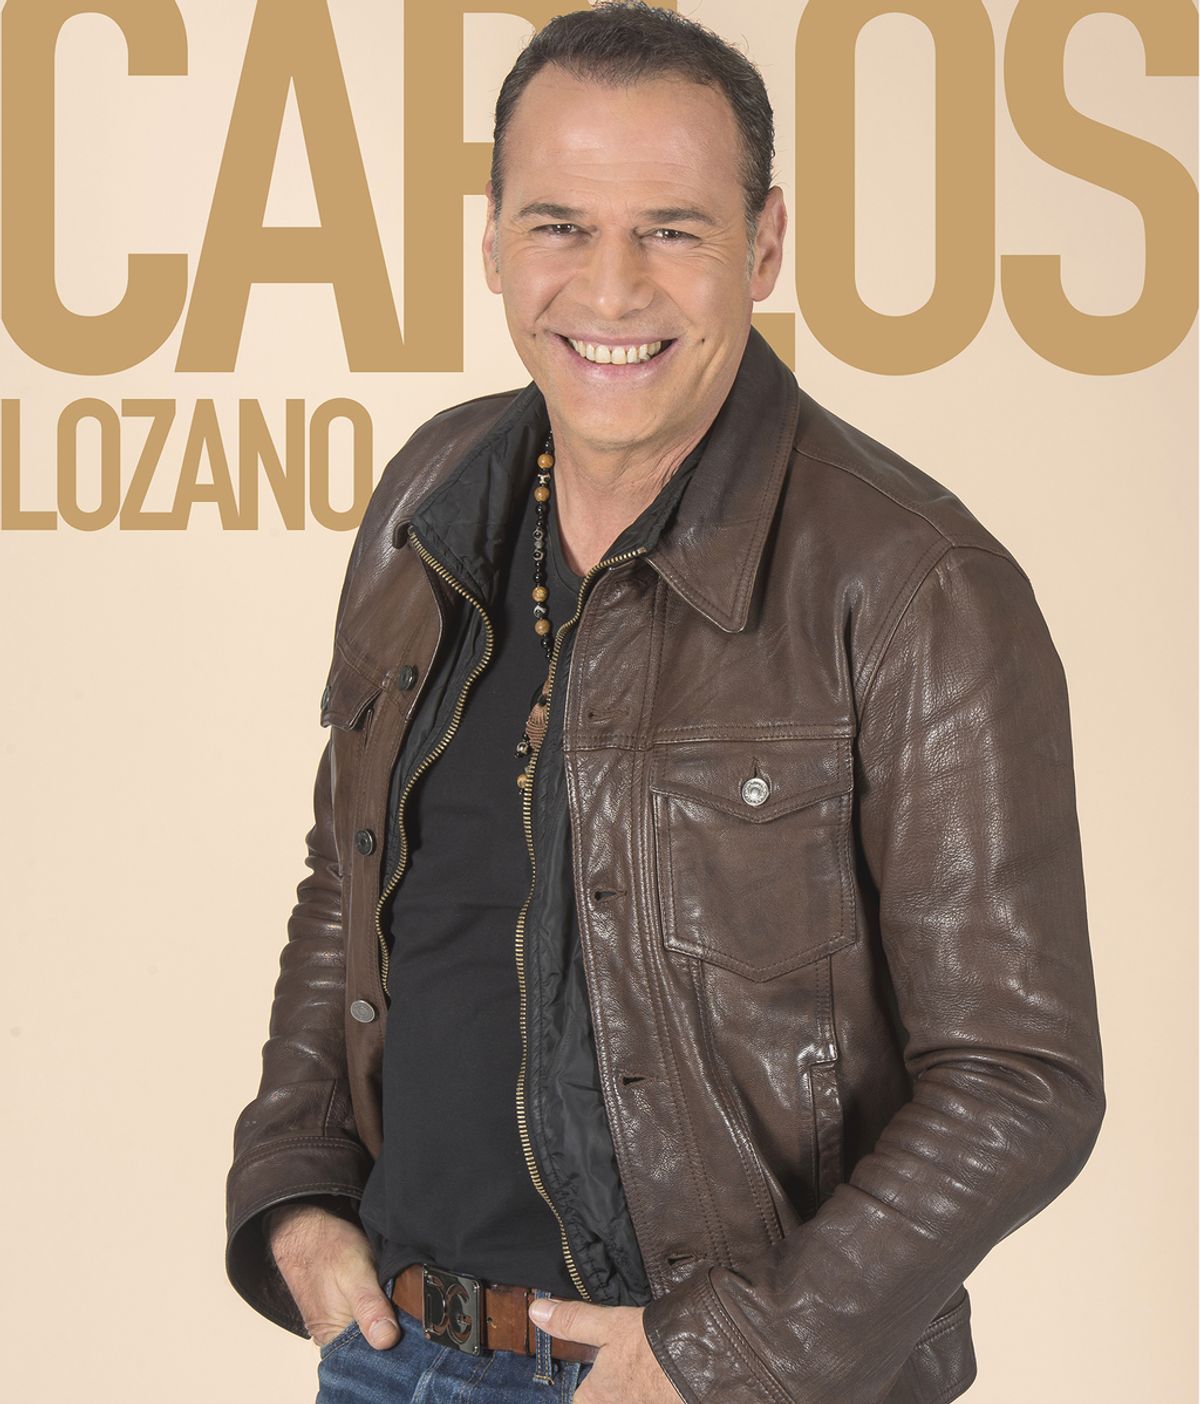 Carlos Lozano, presentador y modelo